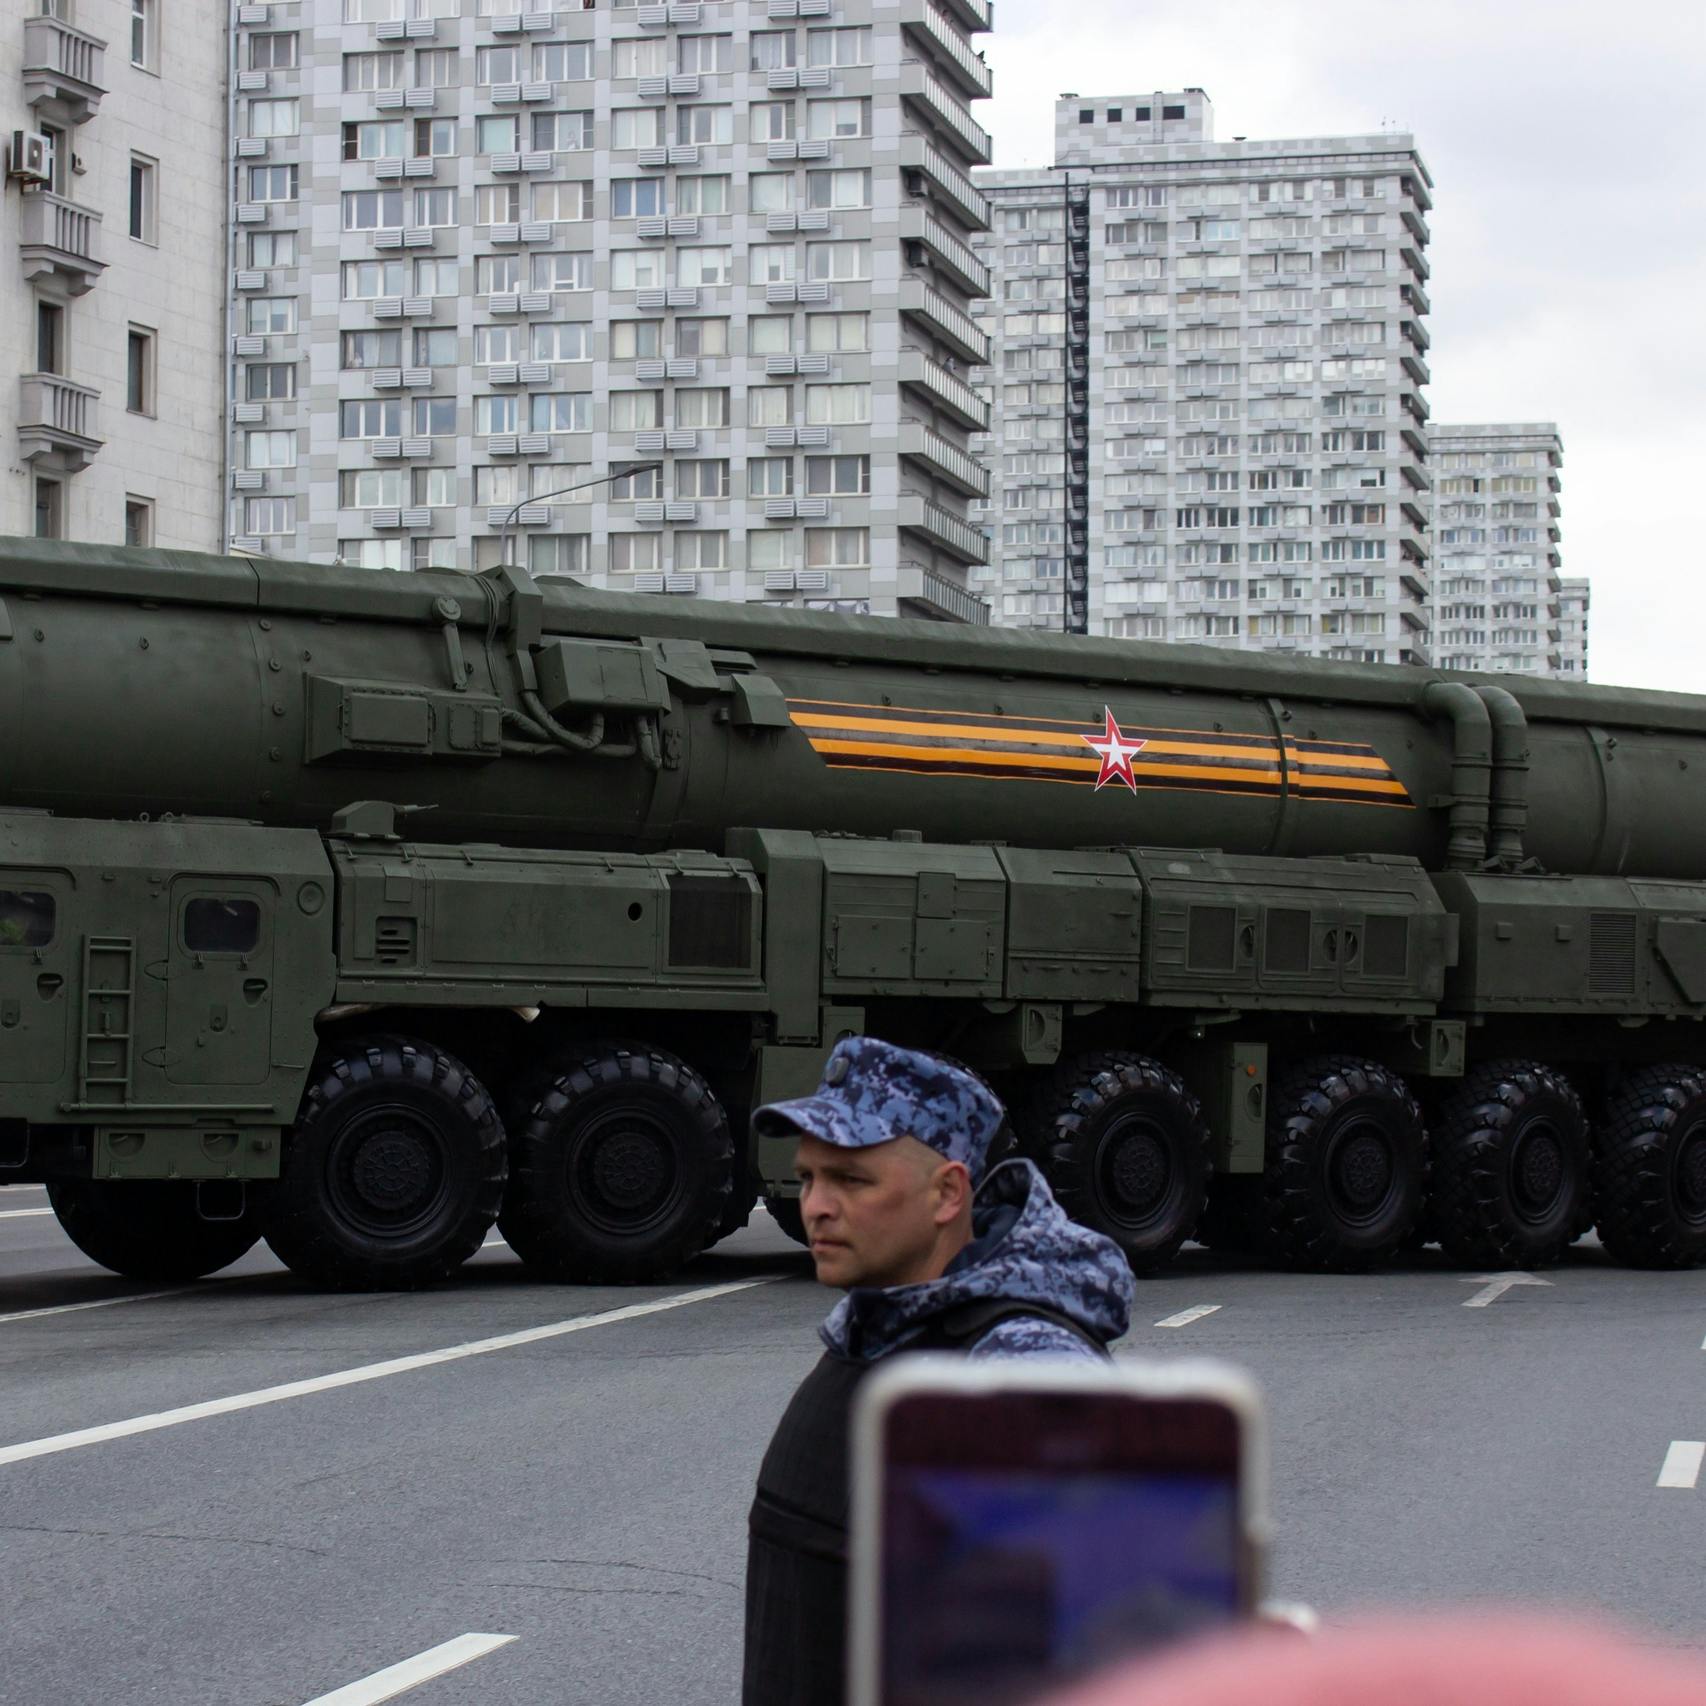 Russische raketten als reactie op droneaanvallen; 'veel anders kunnen ze niet'